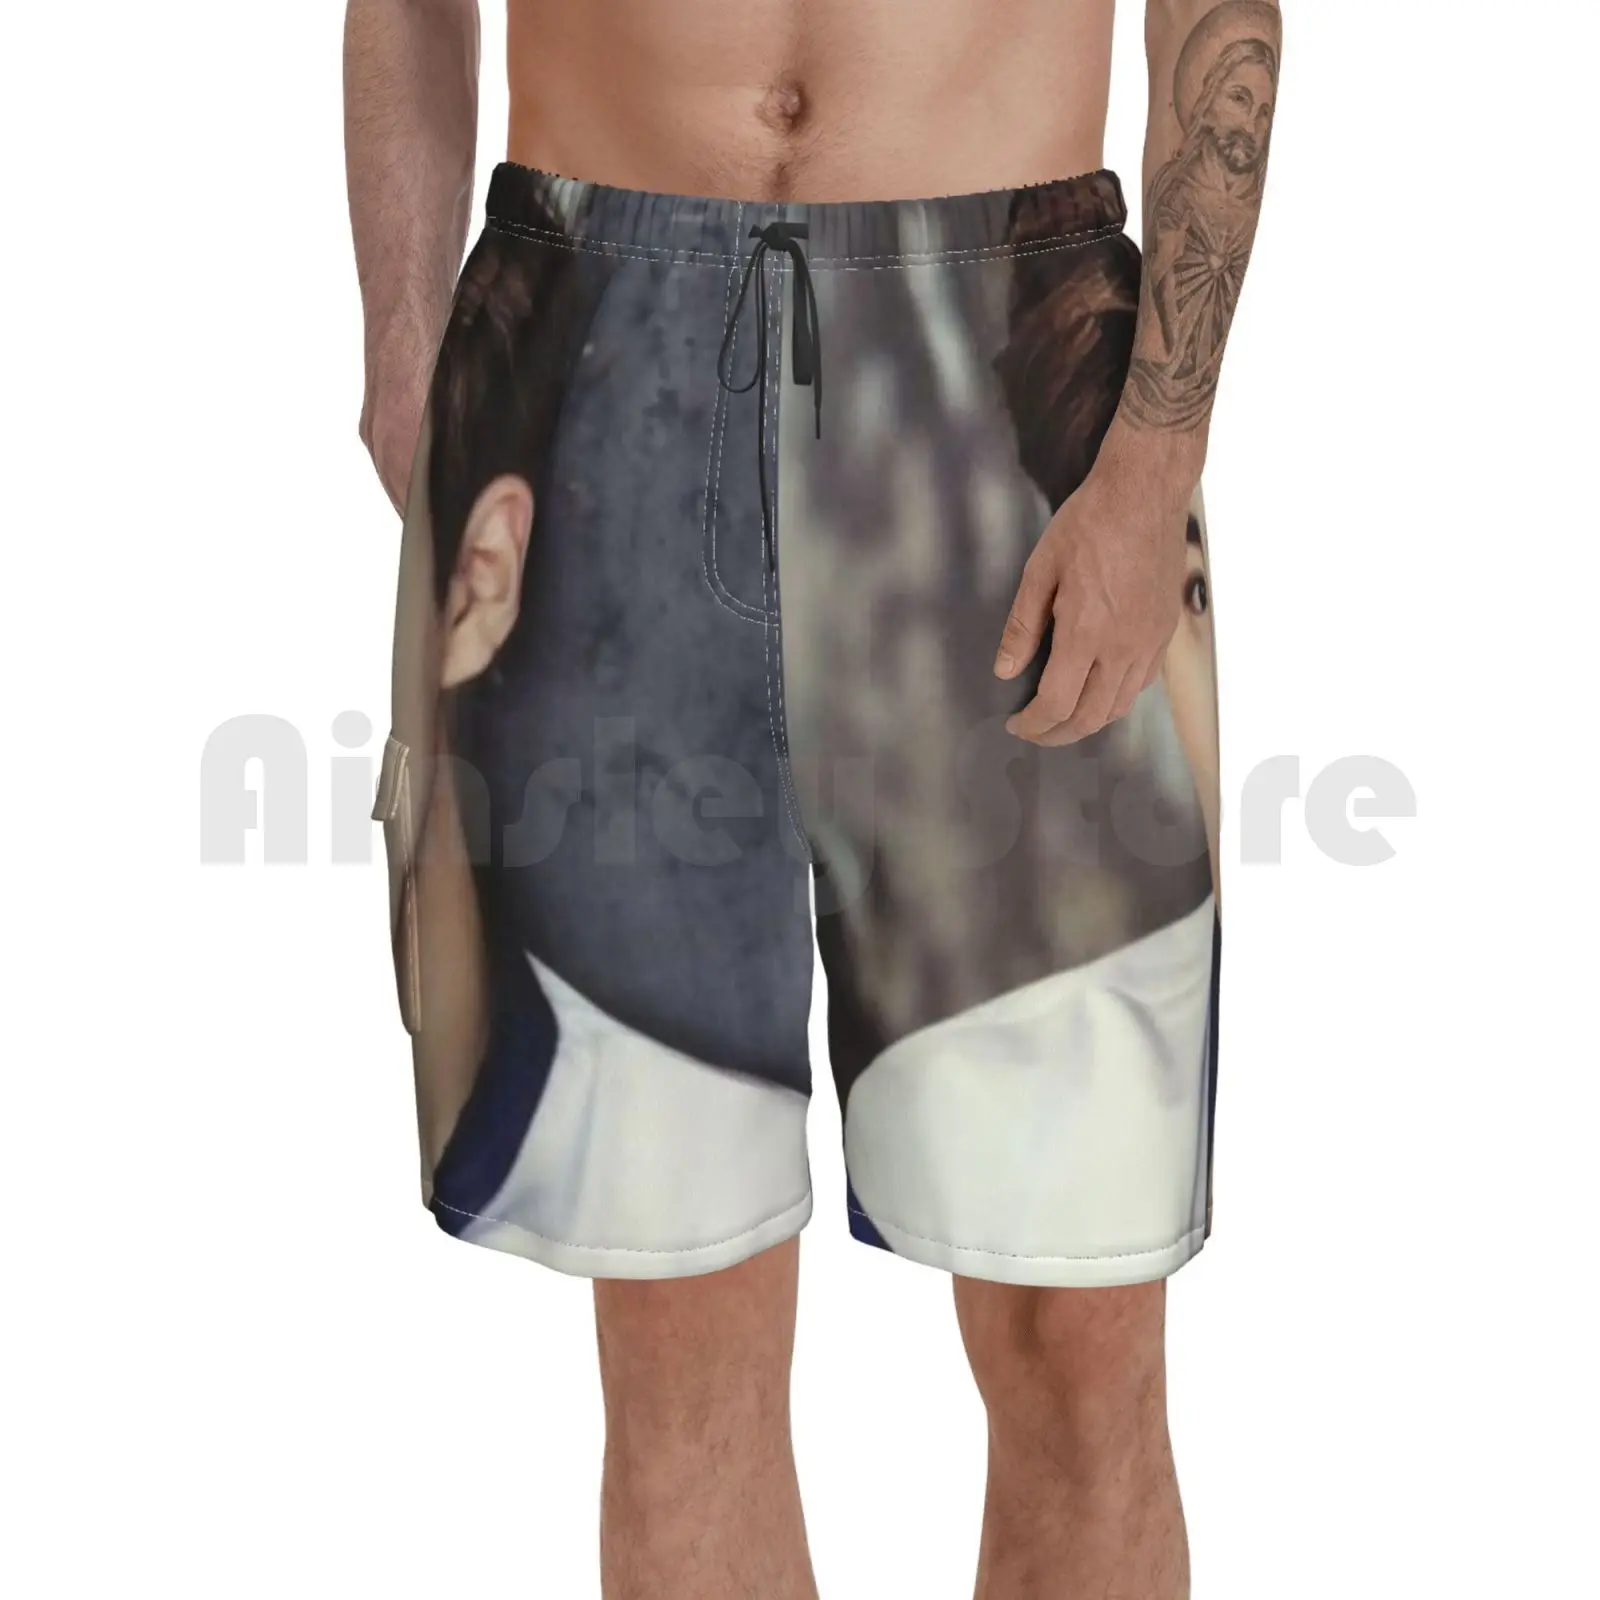 

Сухо певица дизайн Пляжные шорты мужские пляжные шорты Плавание Мужские Шорты для купания сухо Корейская музыка Kpop